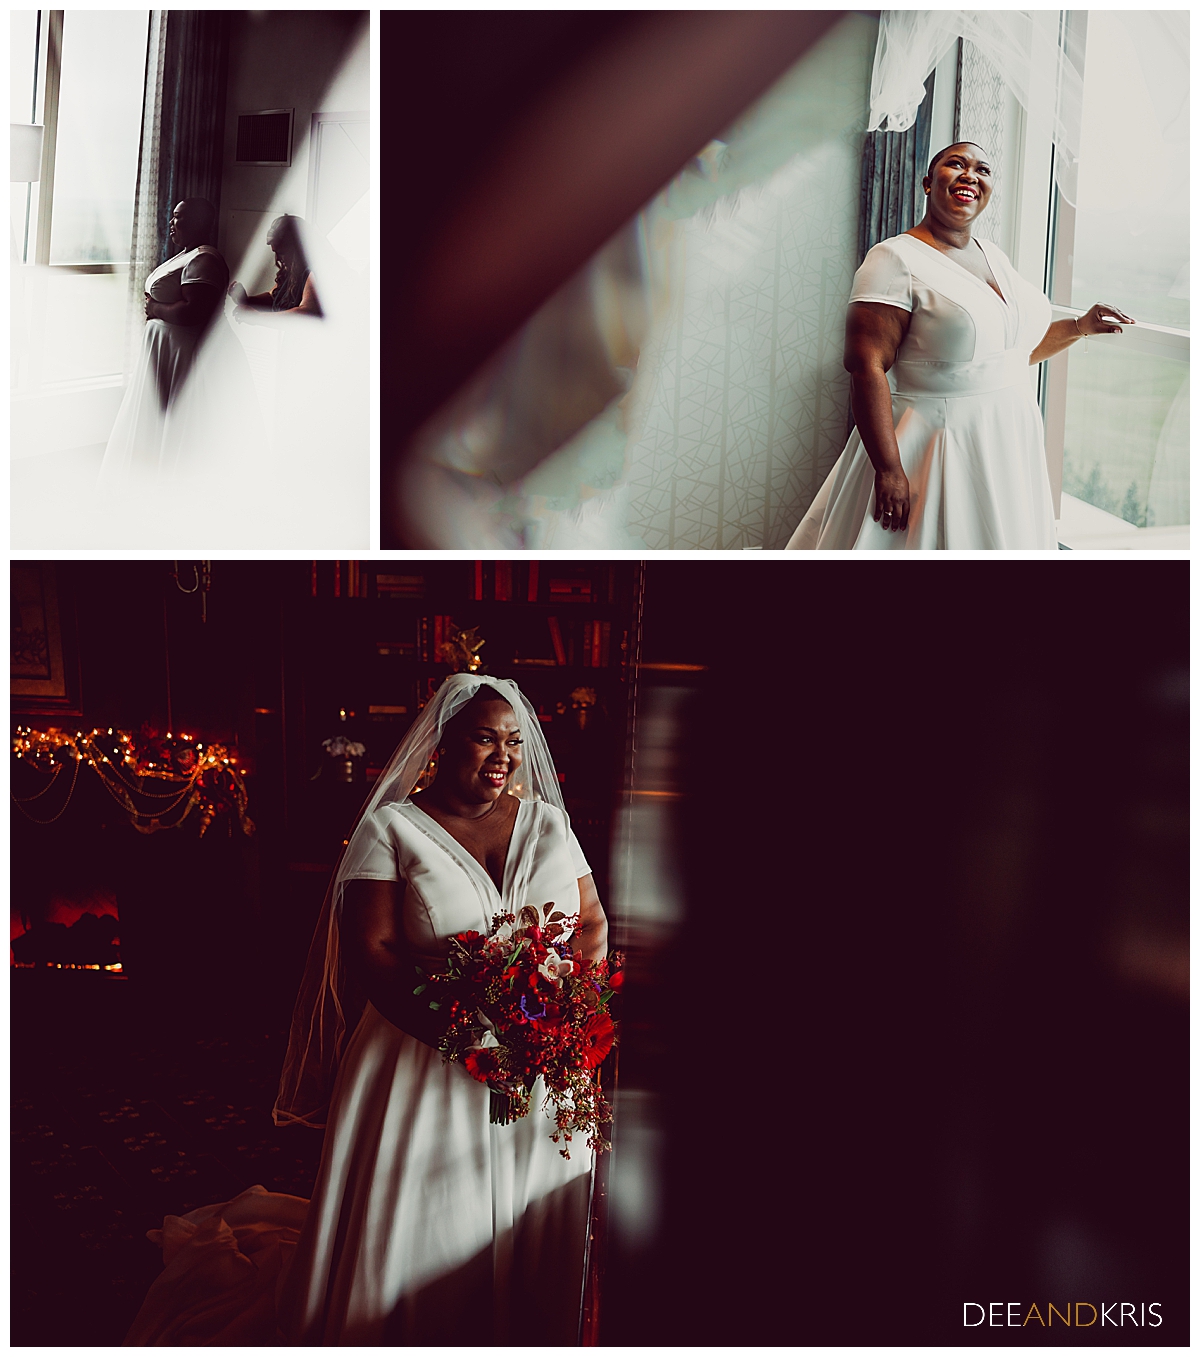 Three images: Top left image of bride taken through glass window of wooden door. Top right image of bride standing in front of window. Bottom image of bride holding bouquet looking out window.